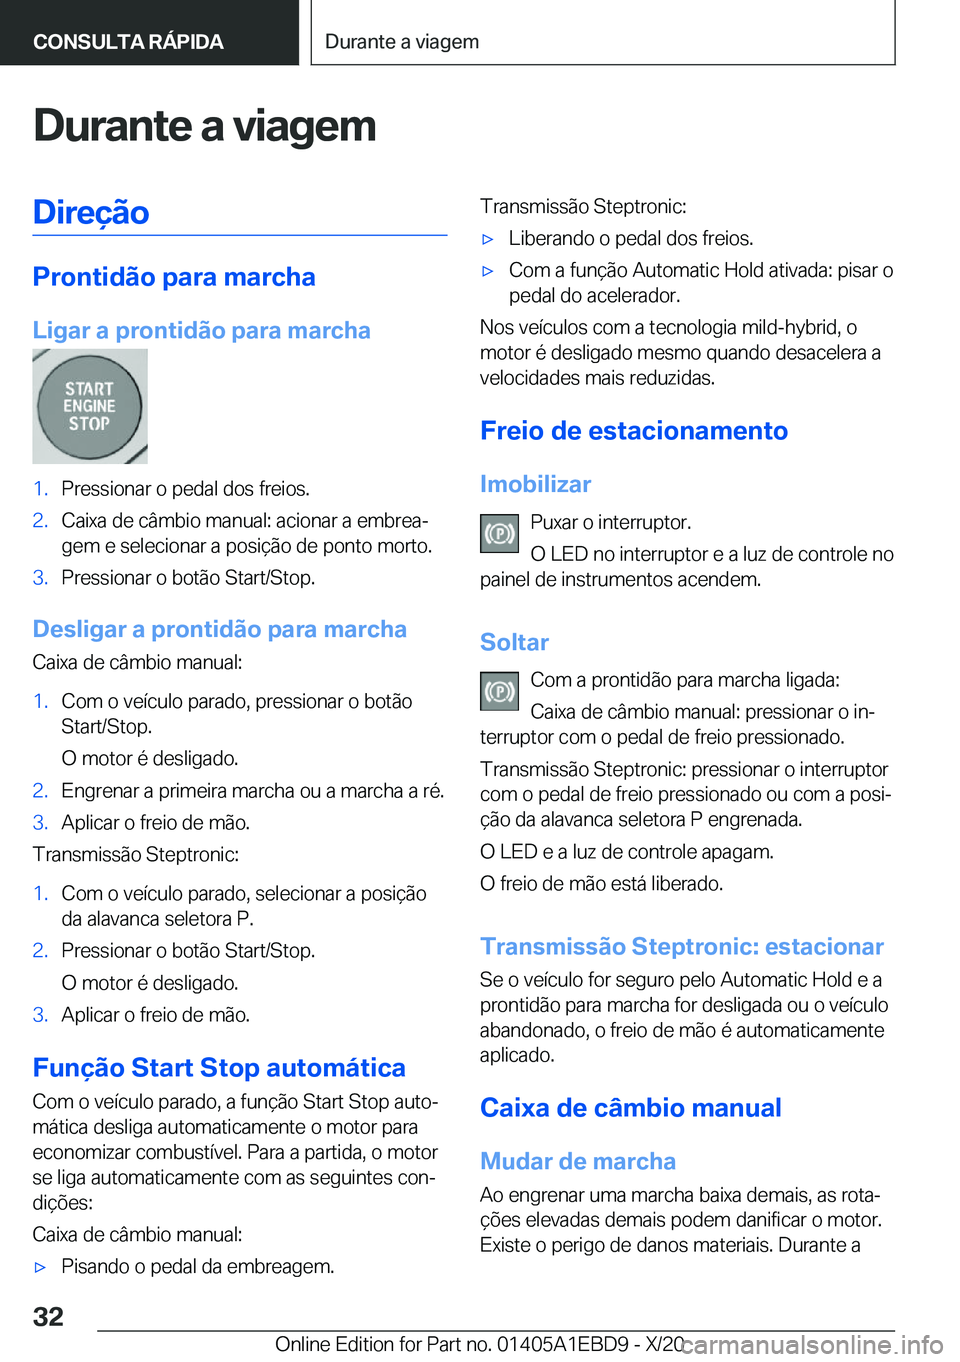 BMW 3 SERIES 2021  Manual do condutor (in Portuguese) �D�u�r�a�n�t�e��a��v�i�a�g�e�m�D�i�r�e�